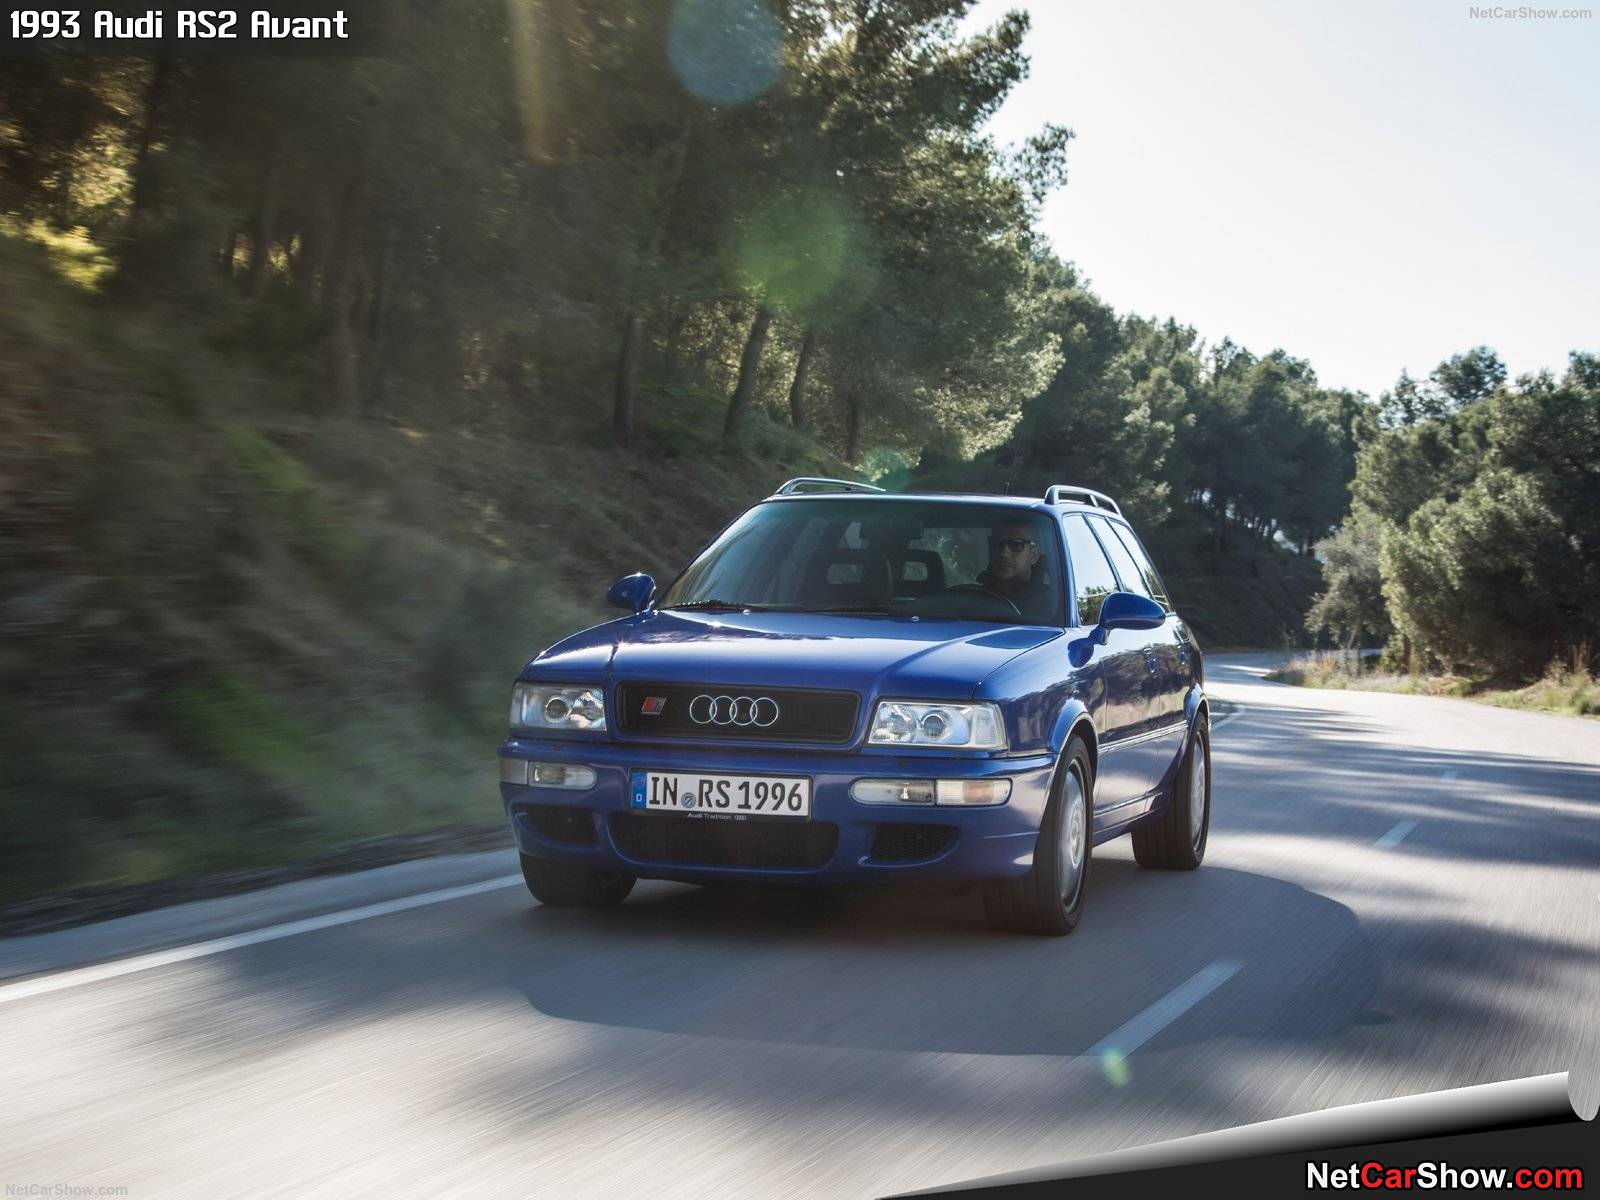 Audi RS2 Avant (1993) 5 of 15